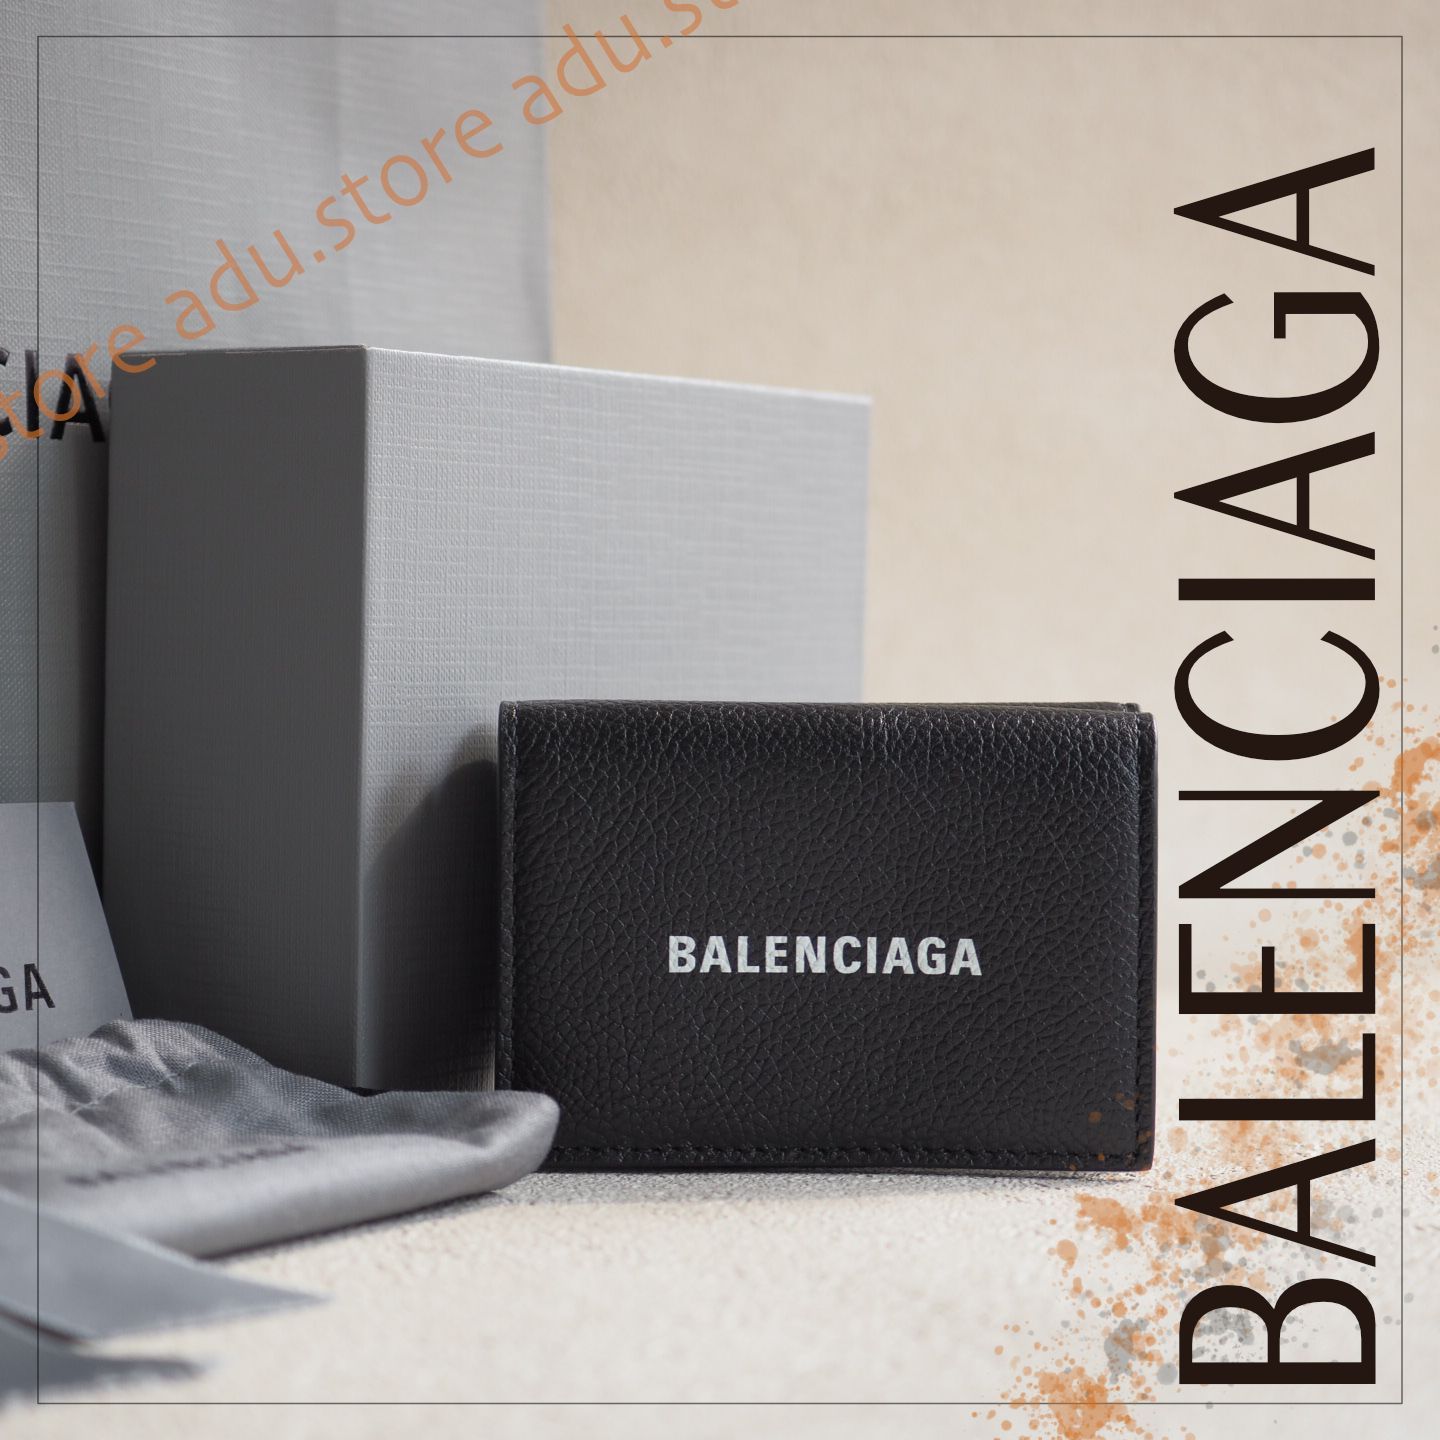 ◇バレンシアガ◇594312/コンパクトウォレット/三つ折り財布/ブランド